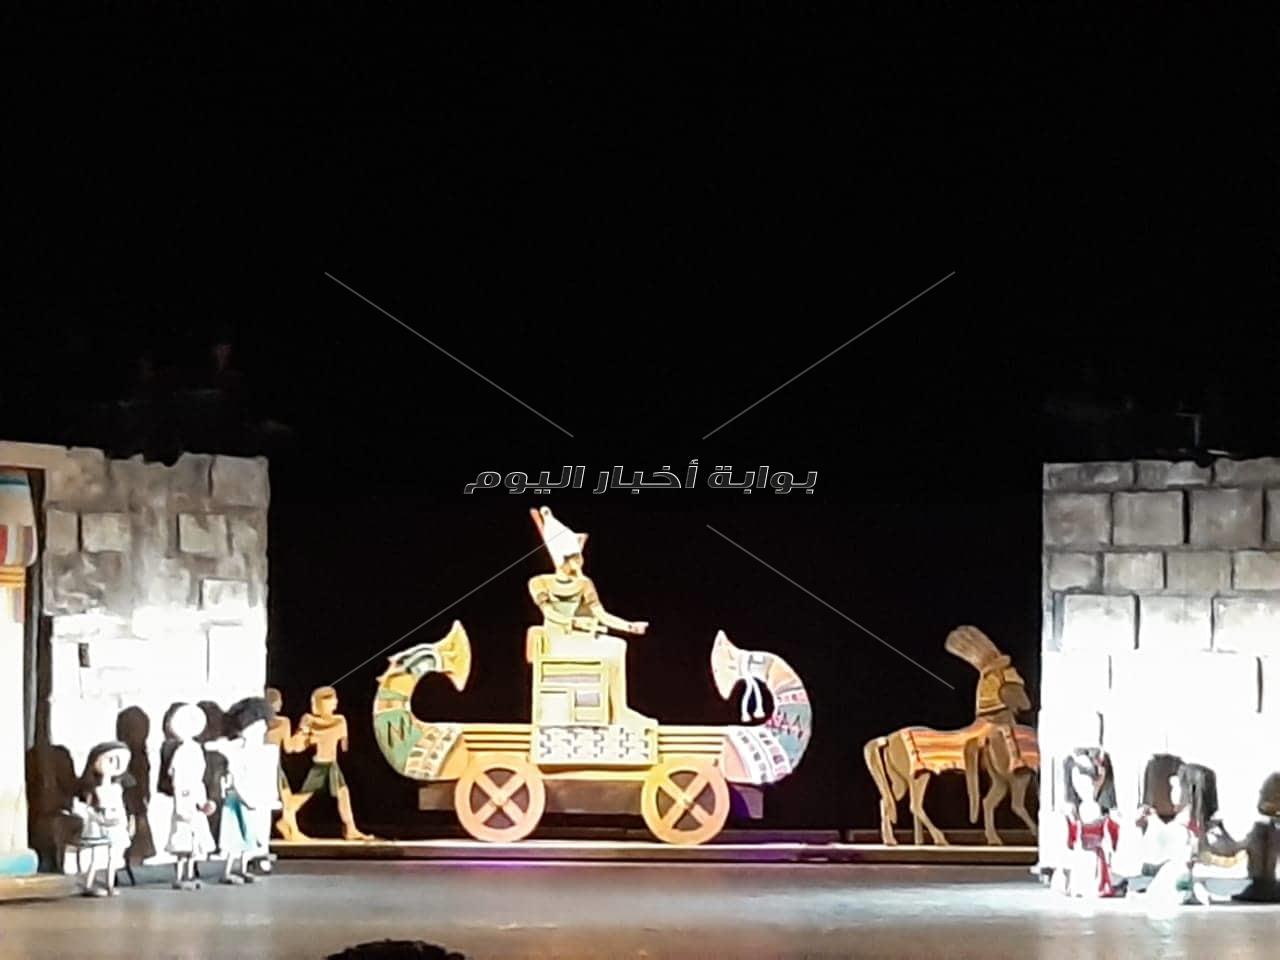  «رحلة الزمن الجميل» تواصل نجاحها على مسرح القاهرة للعرائس 